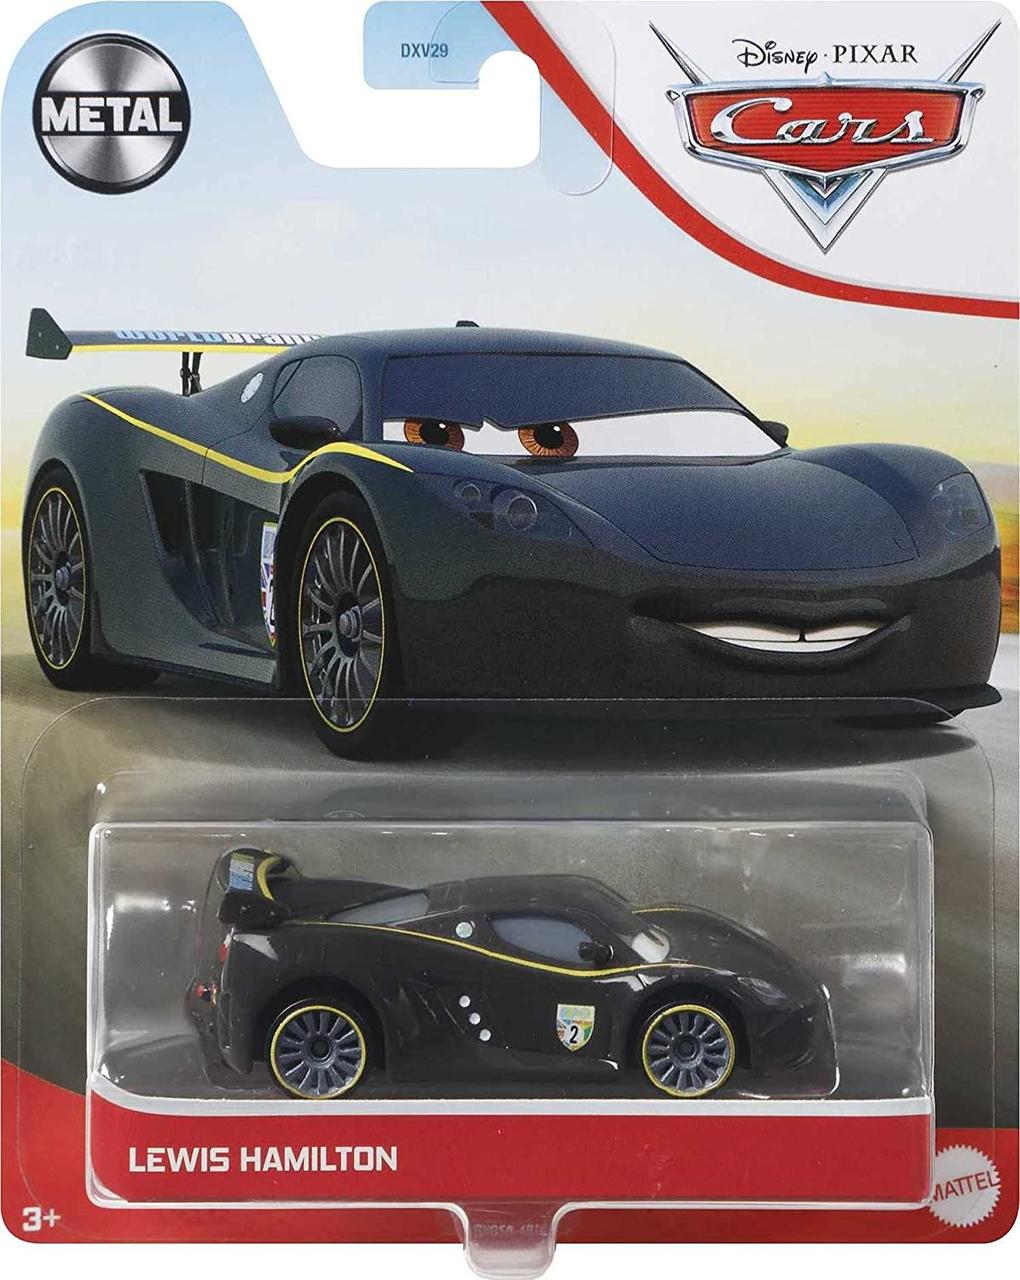 Тачки : Льюїс Хемілтон (Disney and Pixar Cars Lewis Hamilton) від Mattel